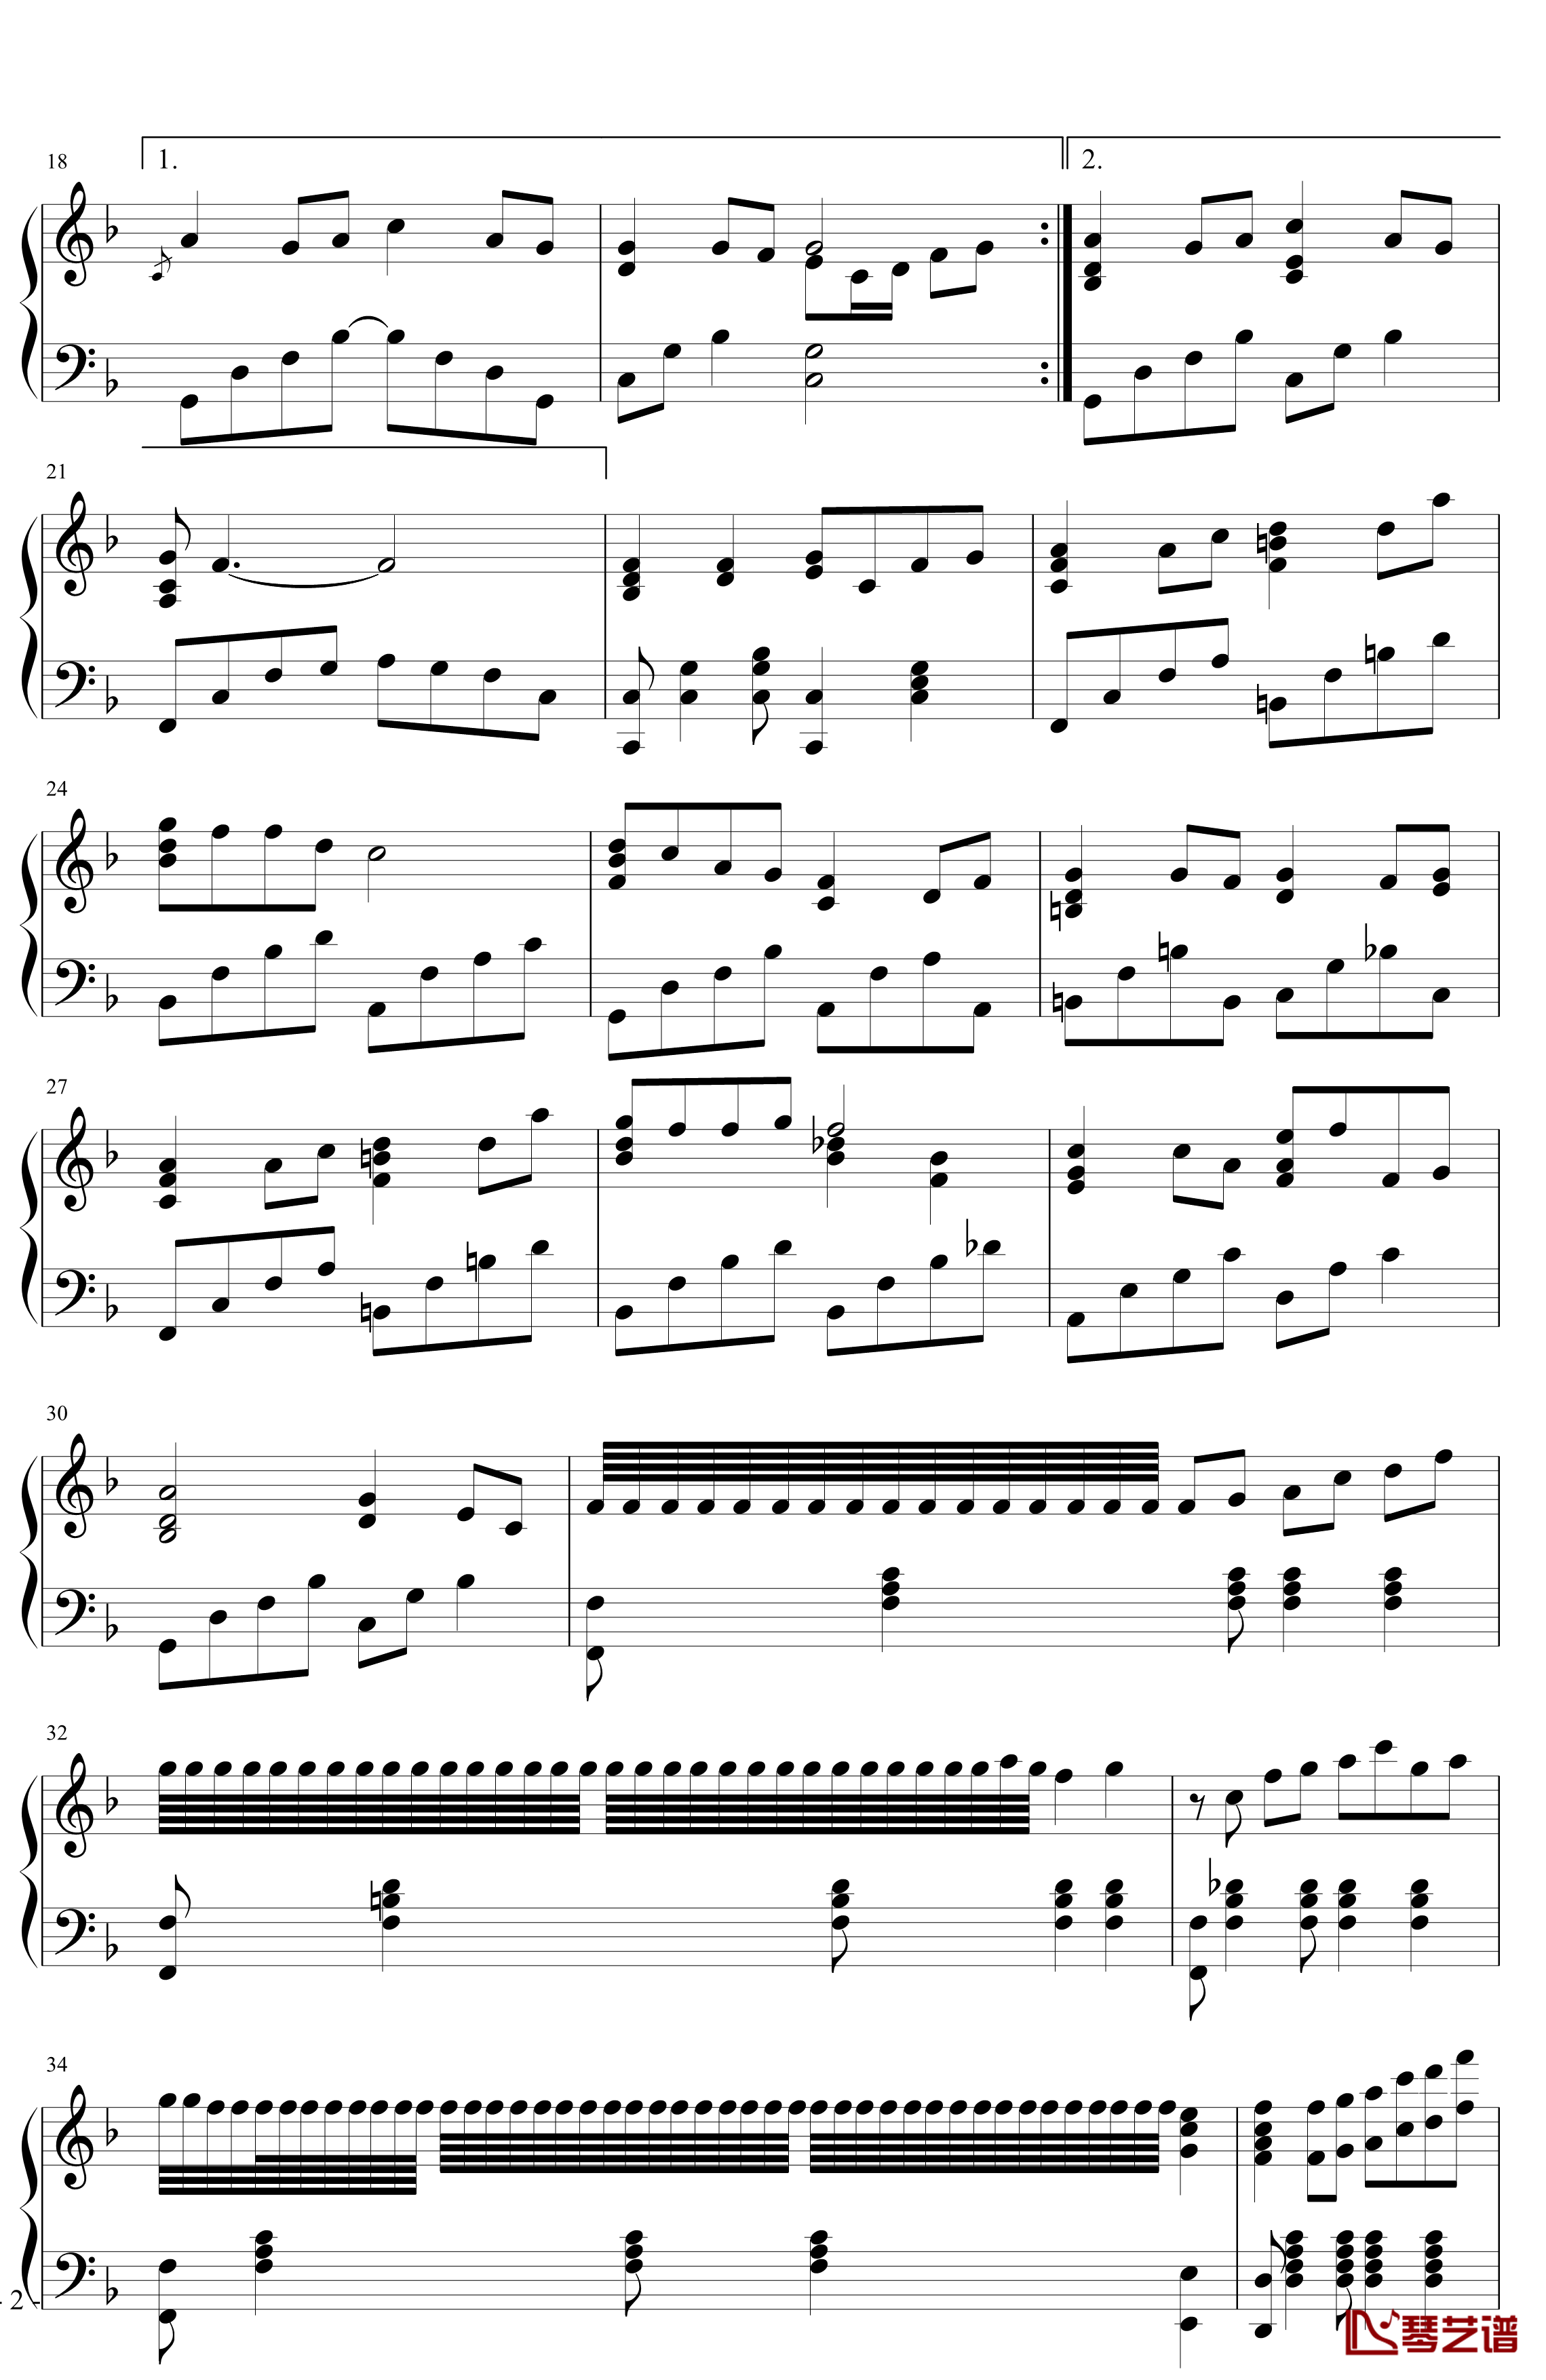 菊花台钢琴谱-超级演奏版-周杰伦2